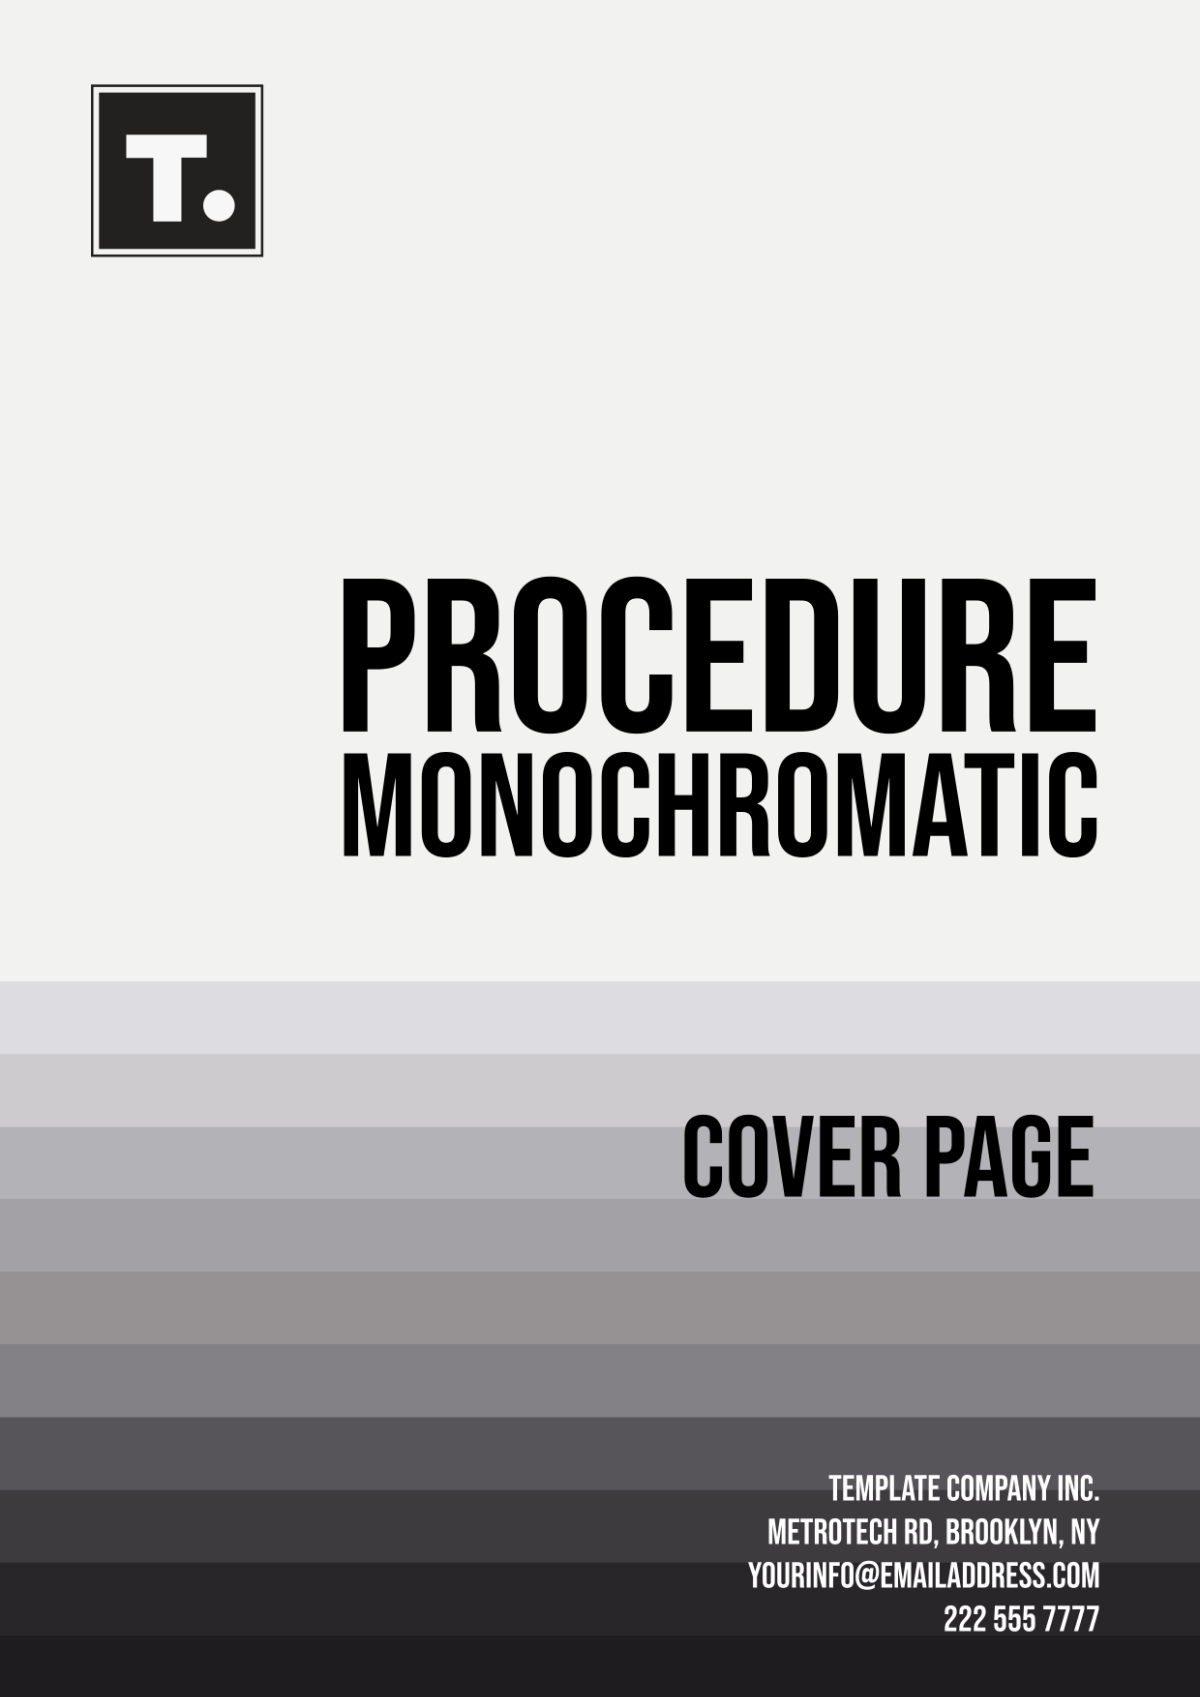 Procedure Monochromatic Cover Page